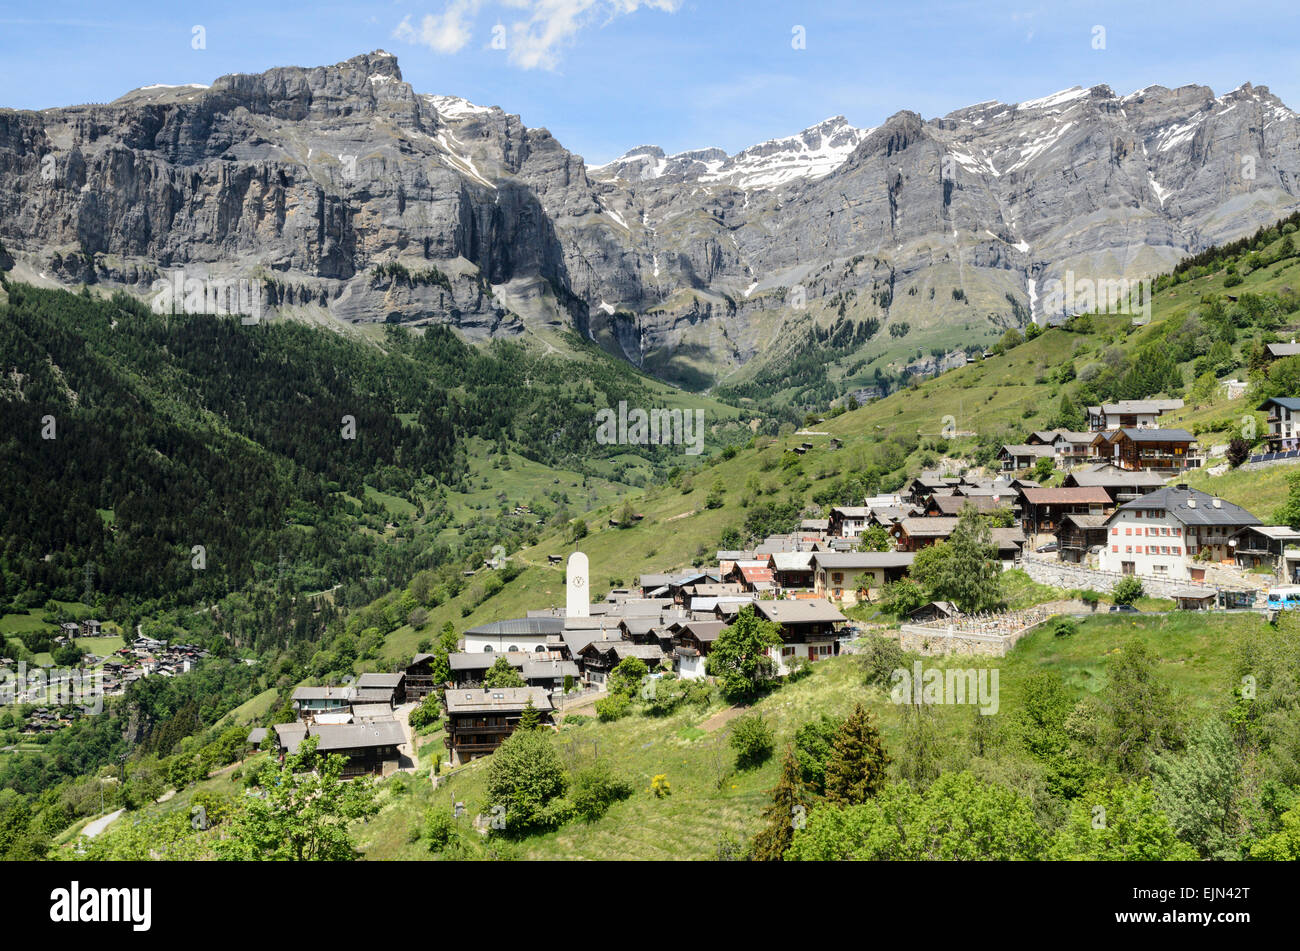 The alpine village of Albinen near Leukerbad, Switzerland. Stock Photo